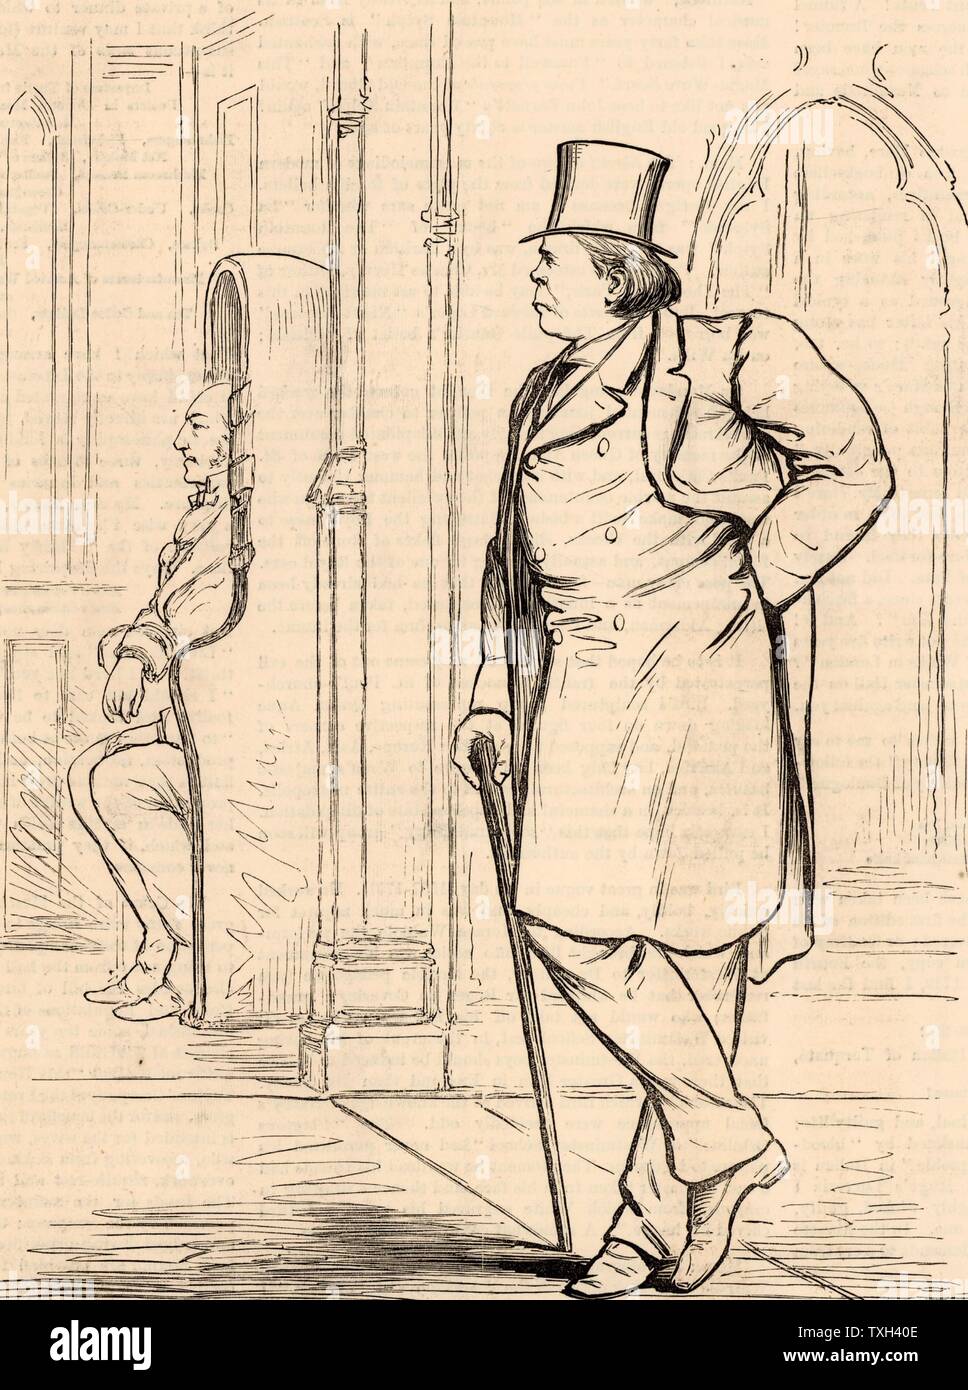 A FREDDO". Charles Bradlaugh (1833-1891) politico inglese, libero pensatore e riformatore sociale, nato Hoxton, Londra. Insegnato sotto il nome di "iconoclasta". Eletto membro del Parlamento di Northampton nel 1880, egli ha rifiutato di prestare giuramento di fedeltà ed è stato espulso dalla casa. Rieletto e respinti fino al 1886 quando egli ha infine preso il giuramento. Incisione da "l'llustrated London News" (Londra, 3 luglio 1880). Foto Stock